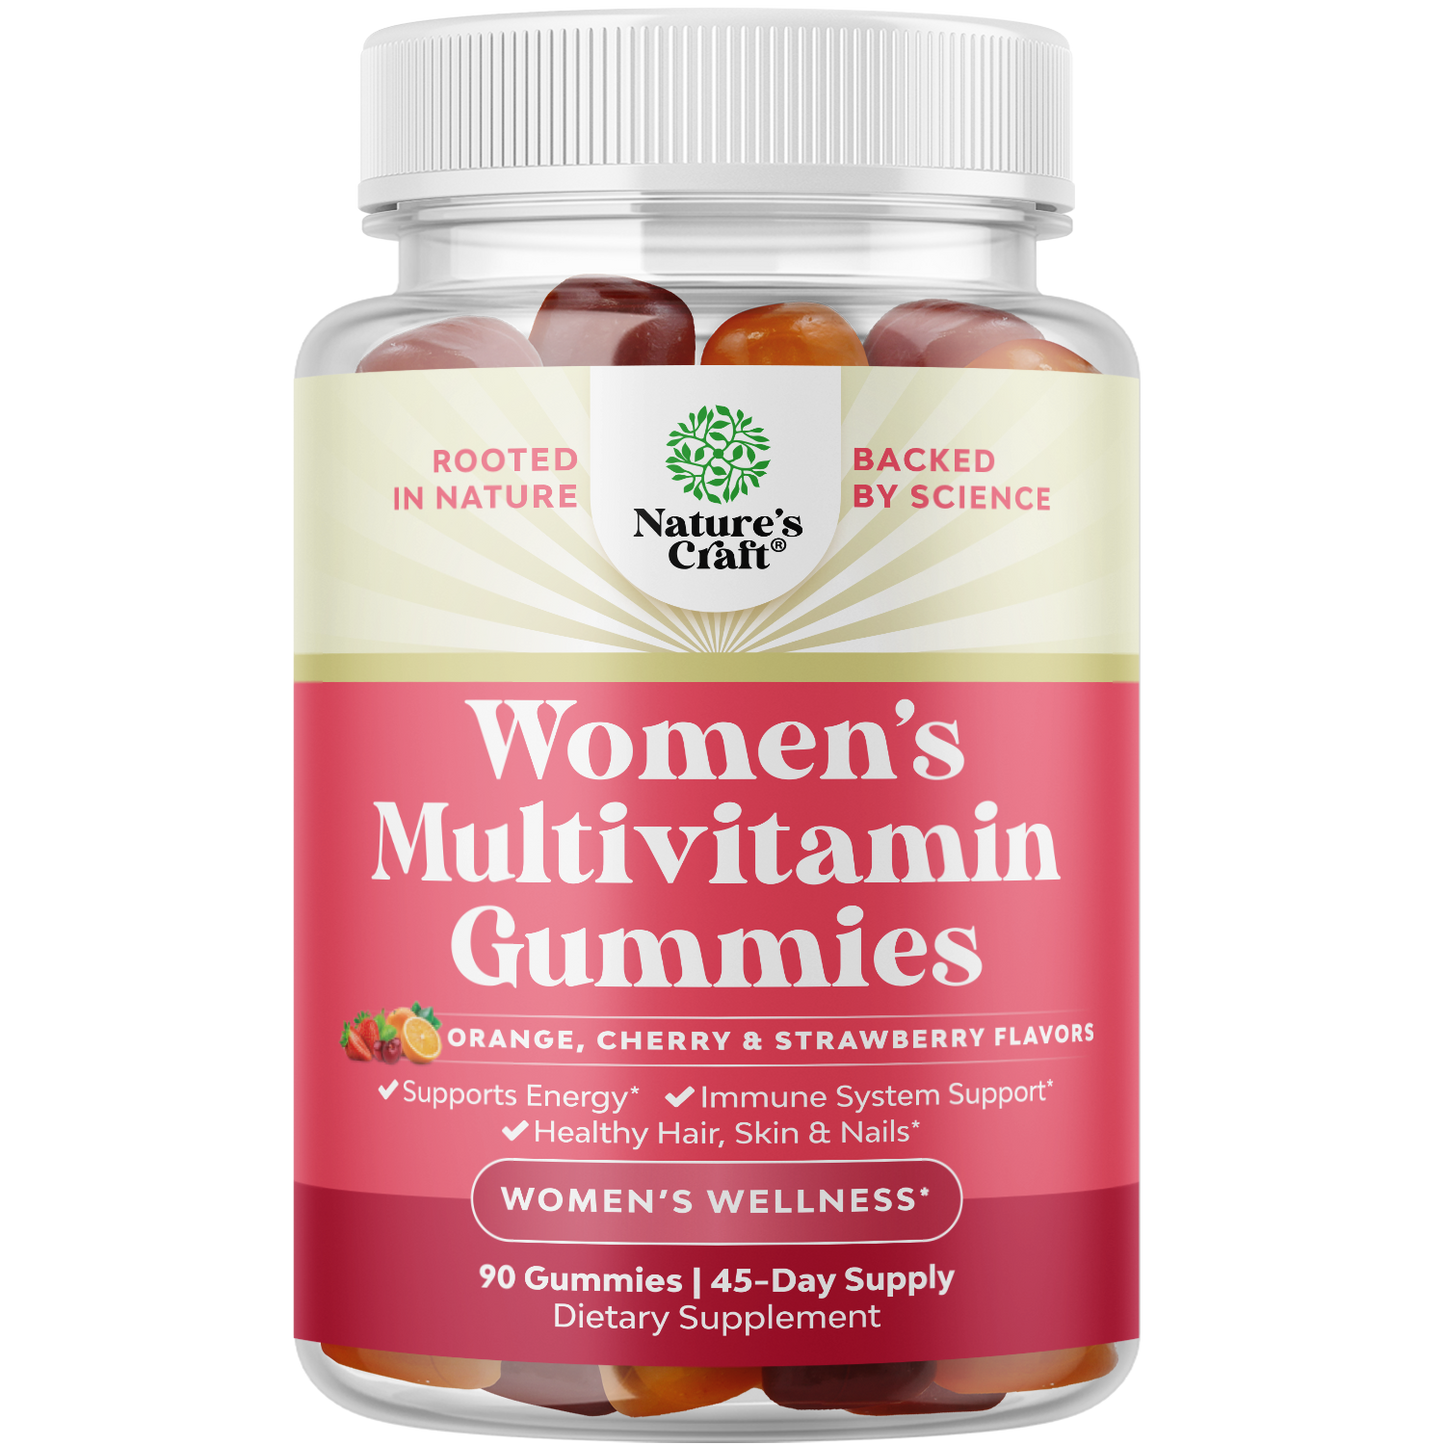 Women's Multivitamin Gummies